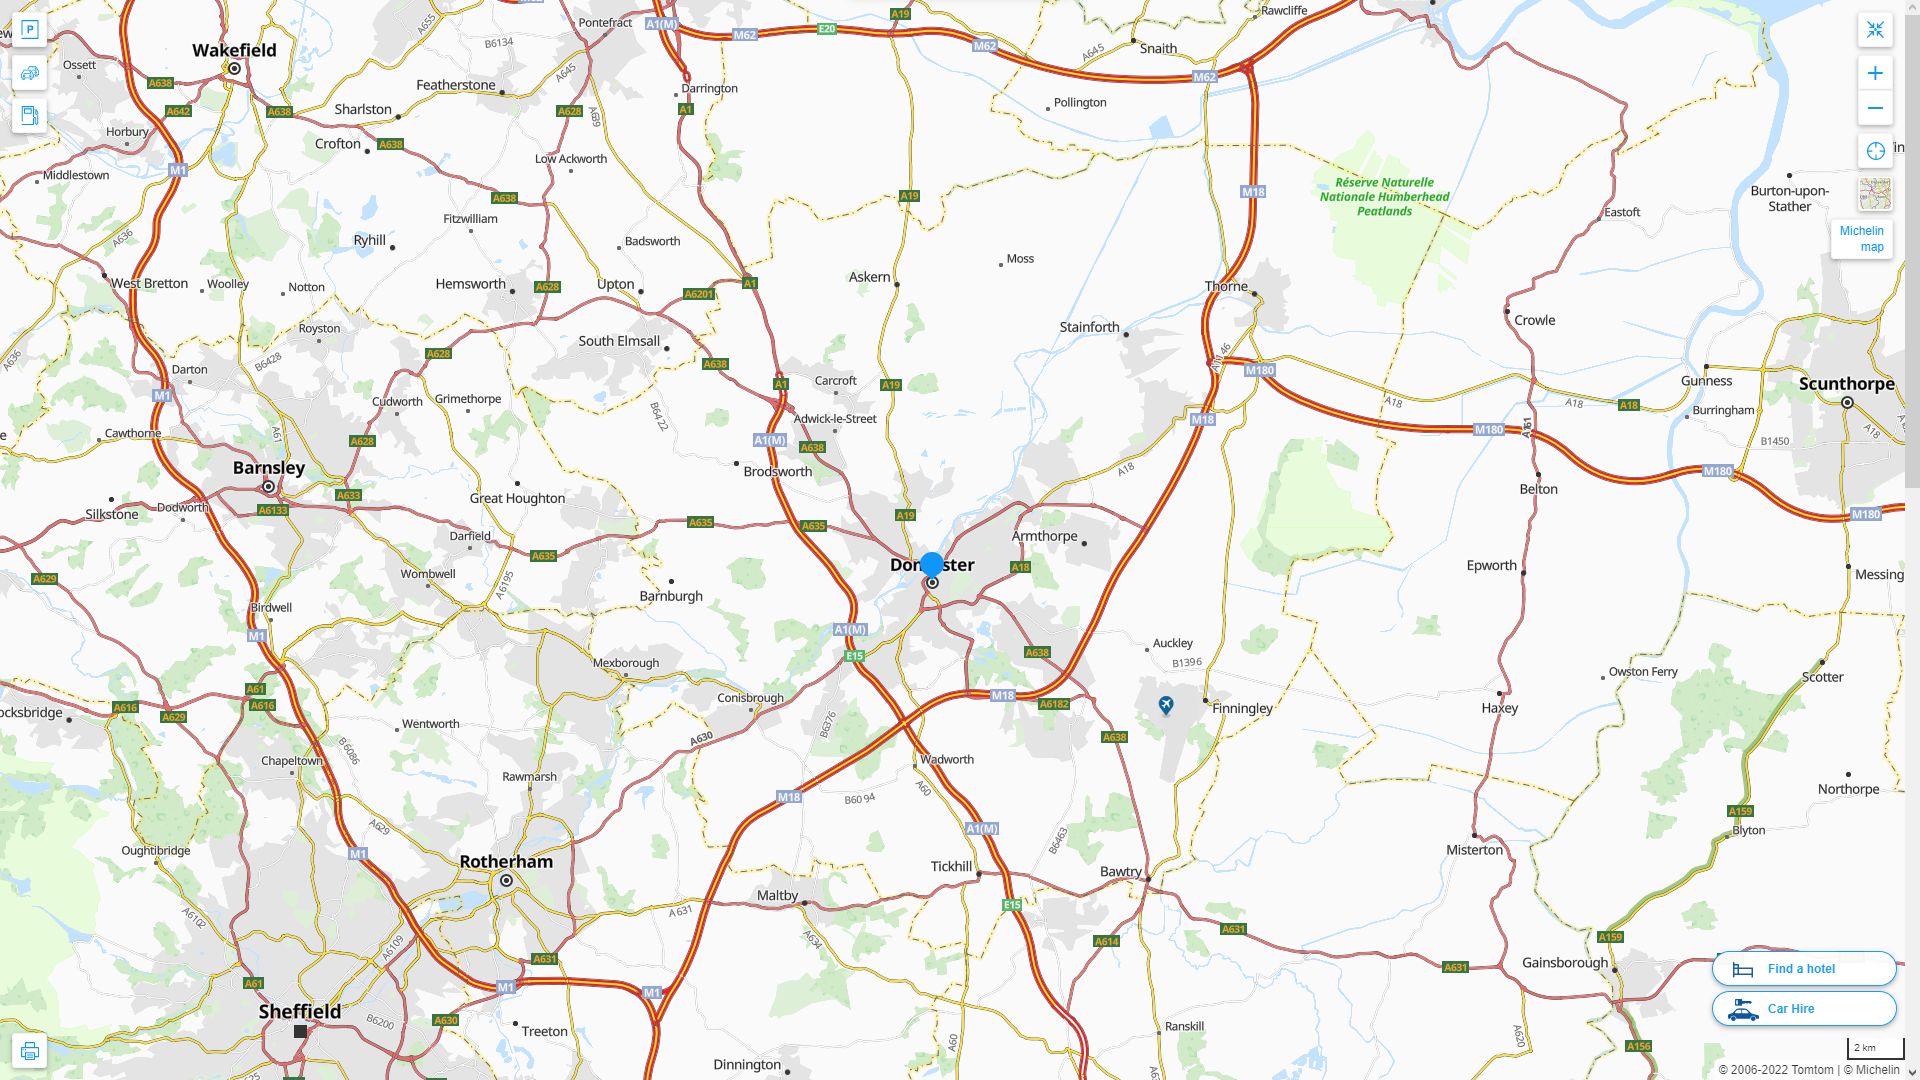 Doncaster Royaume Uni Autoroute et carte routiere